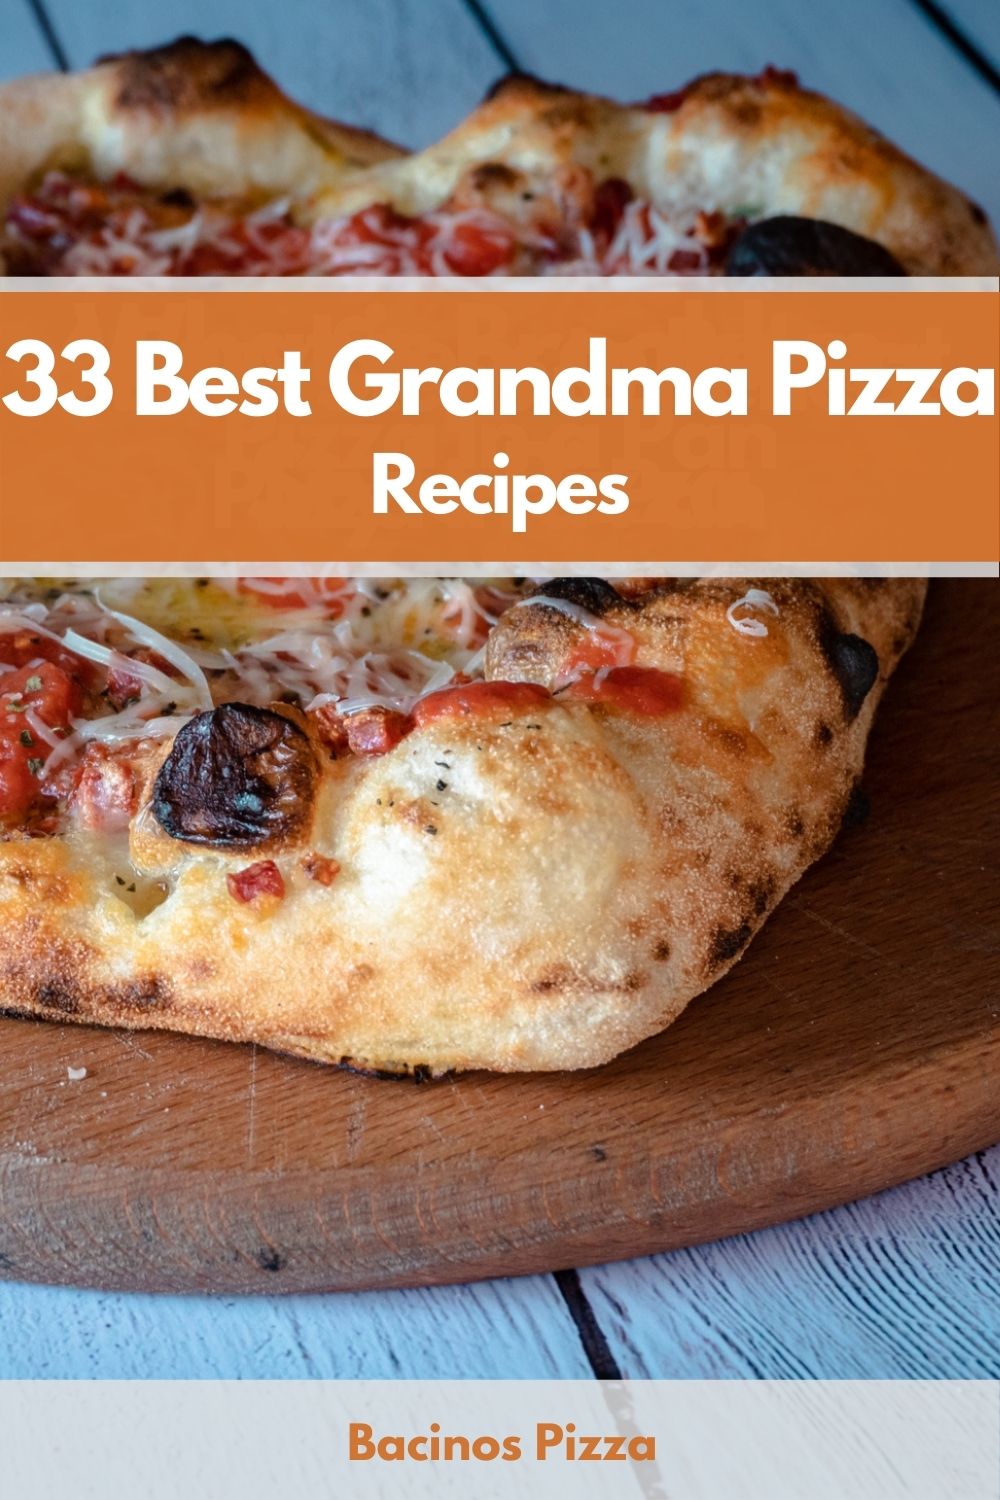 33 Best Grandma Pizza Recipes pin